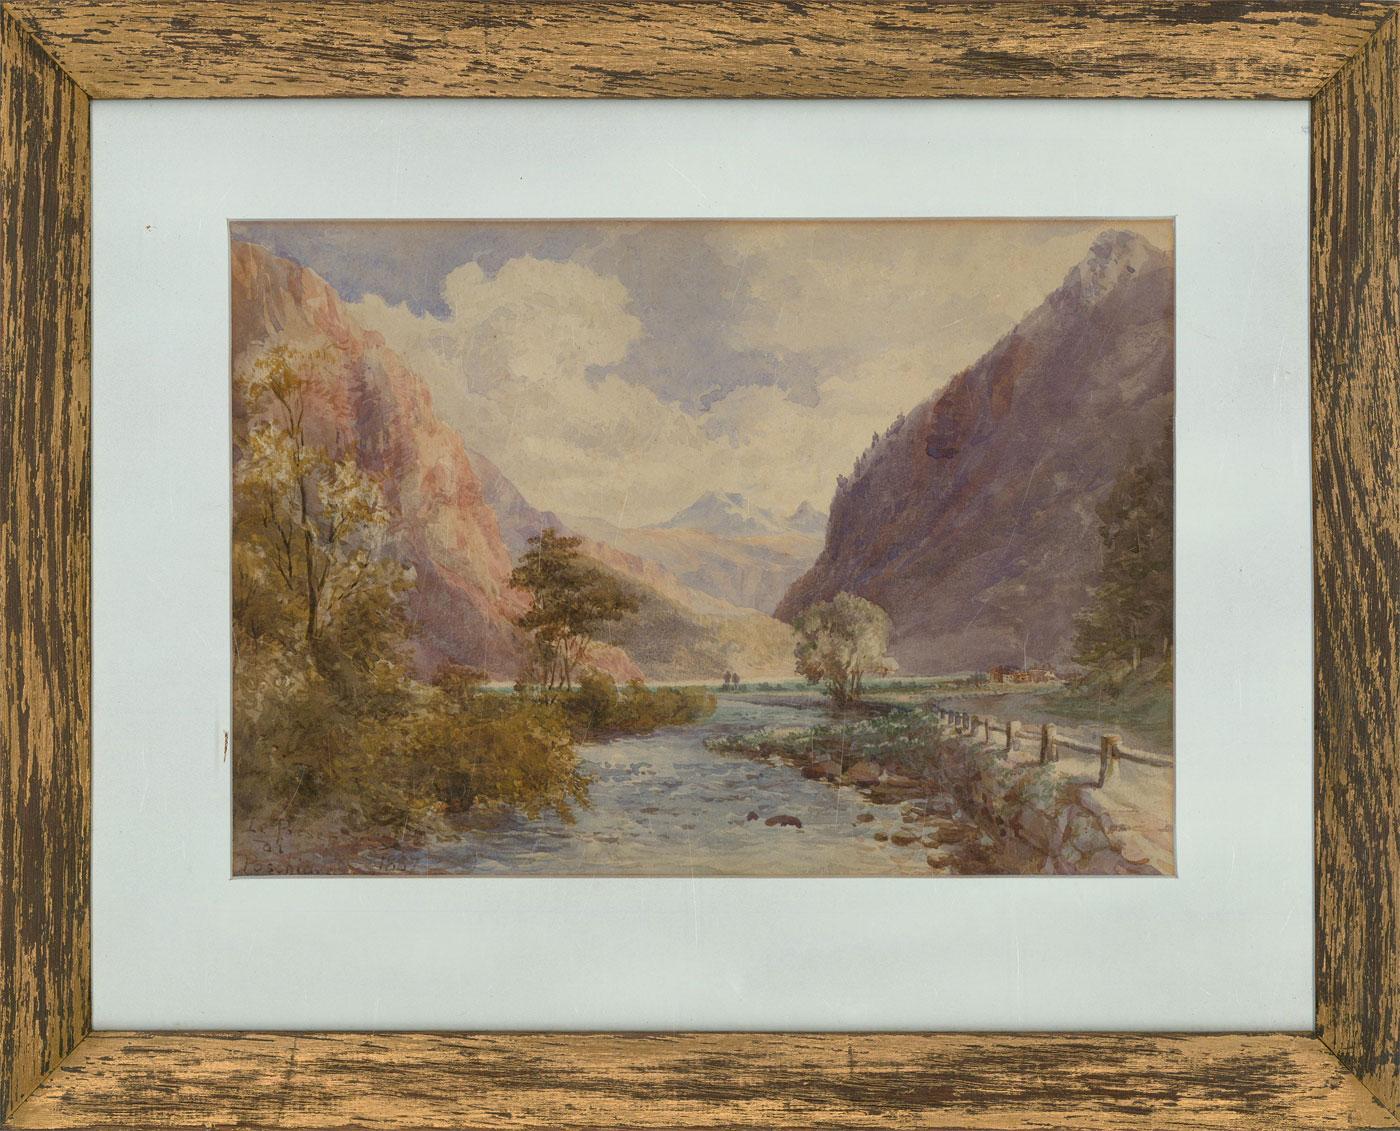 Unknown Landscape Art - 1887 Watercolour - Le Prese di Poschiavo, Switzerland